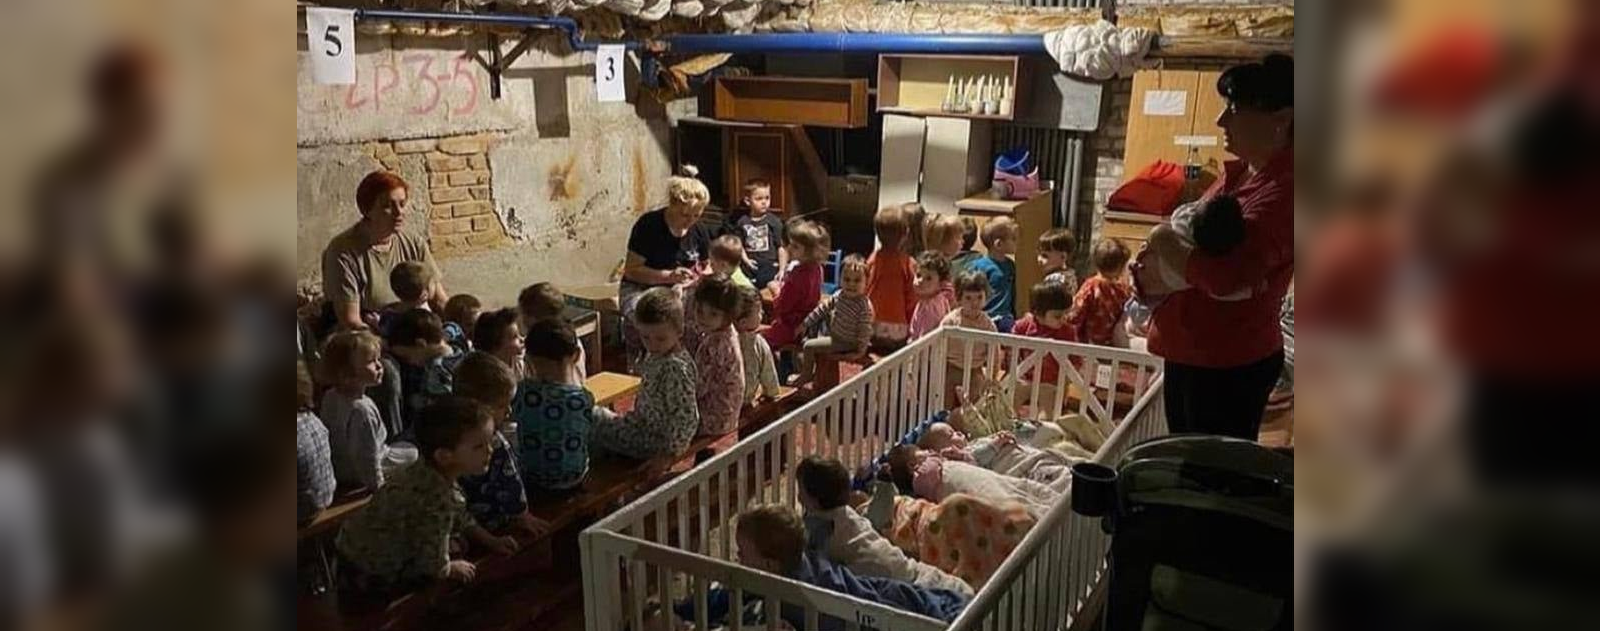 אל לנו לא להיות "חושך לגויים". פליטים במרתף בקייב (צילום: משרד הפנים האוקראיני)